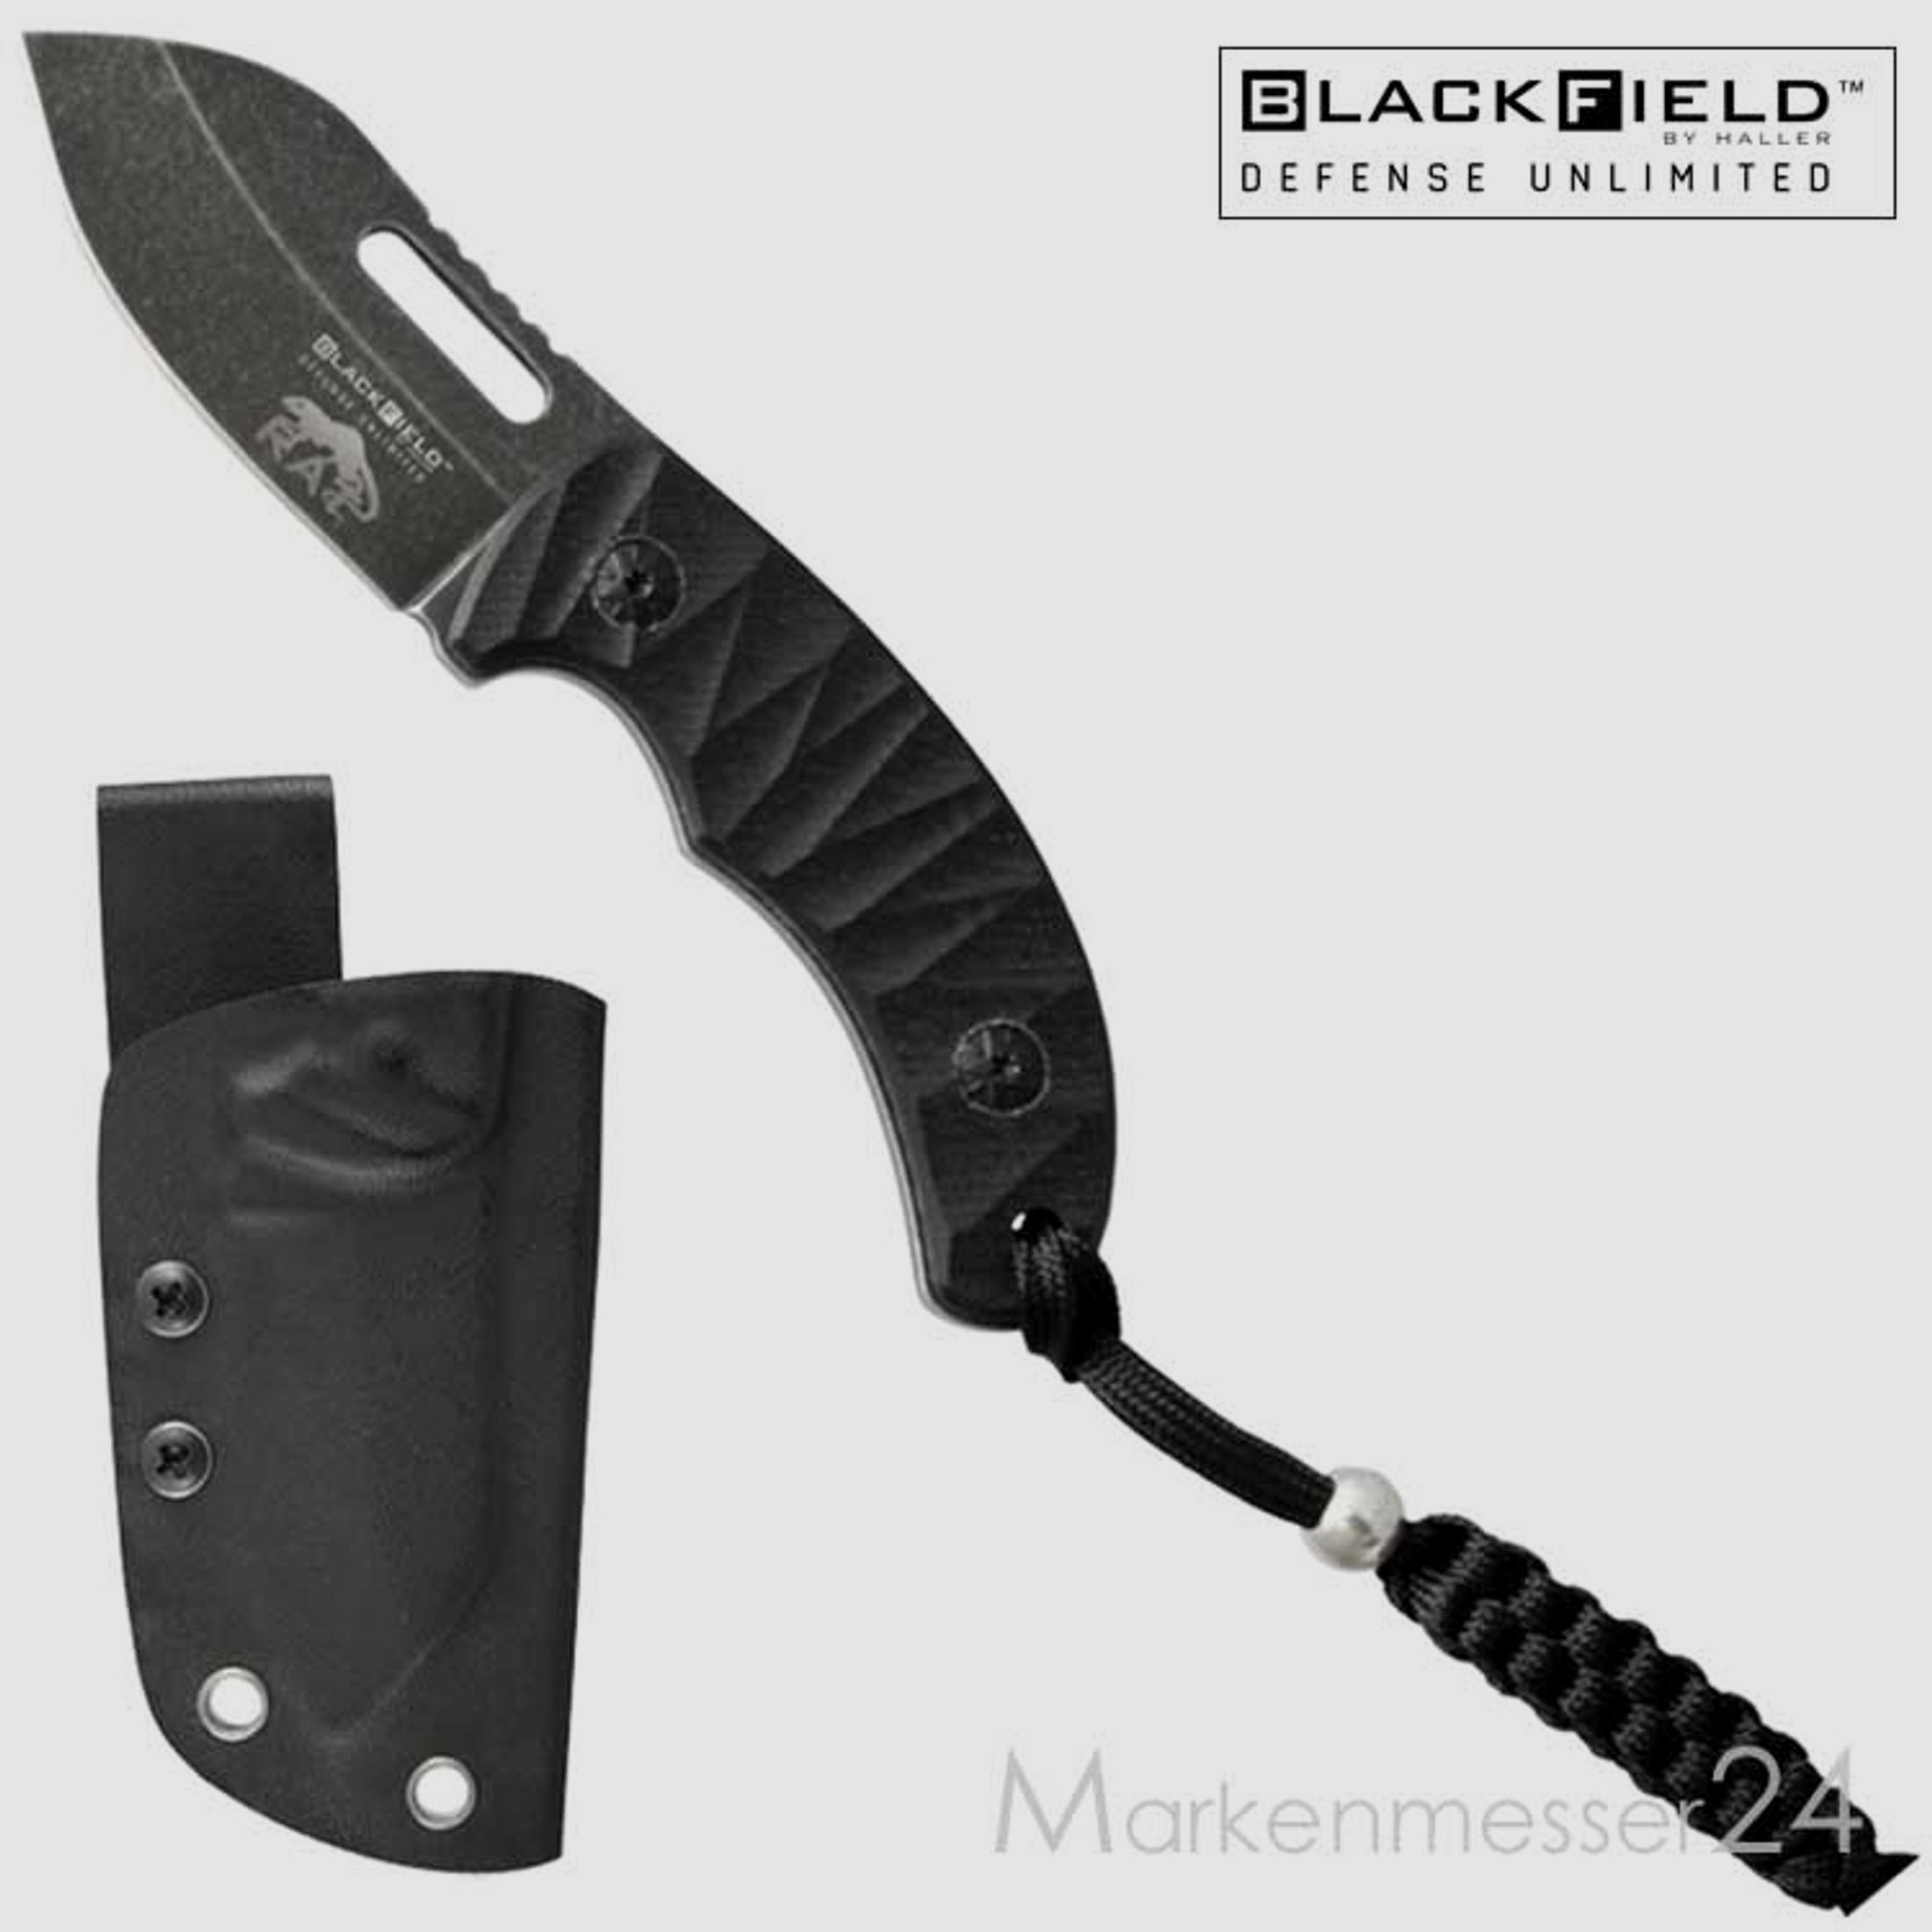 BlackField RAT kleines handliches Messer mit Kydex-Scheide und Lanyard